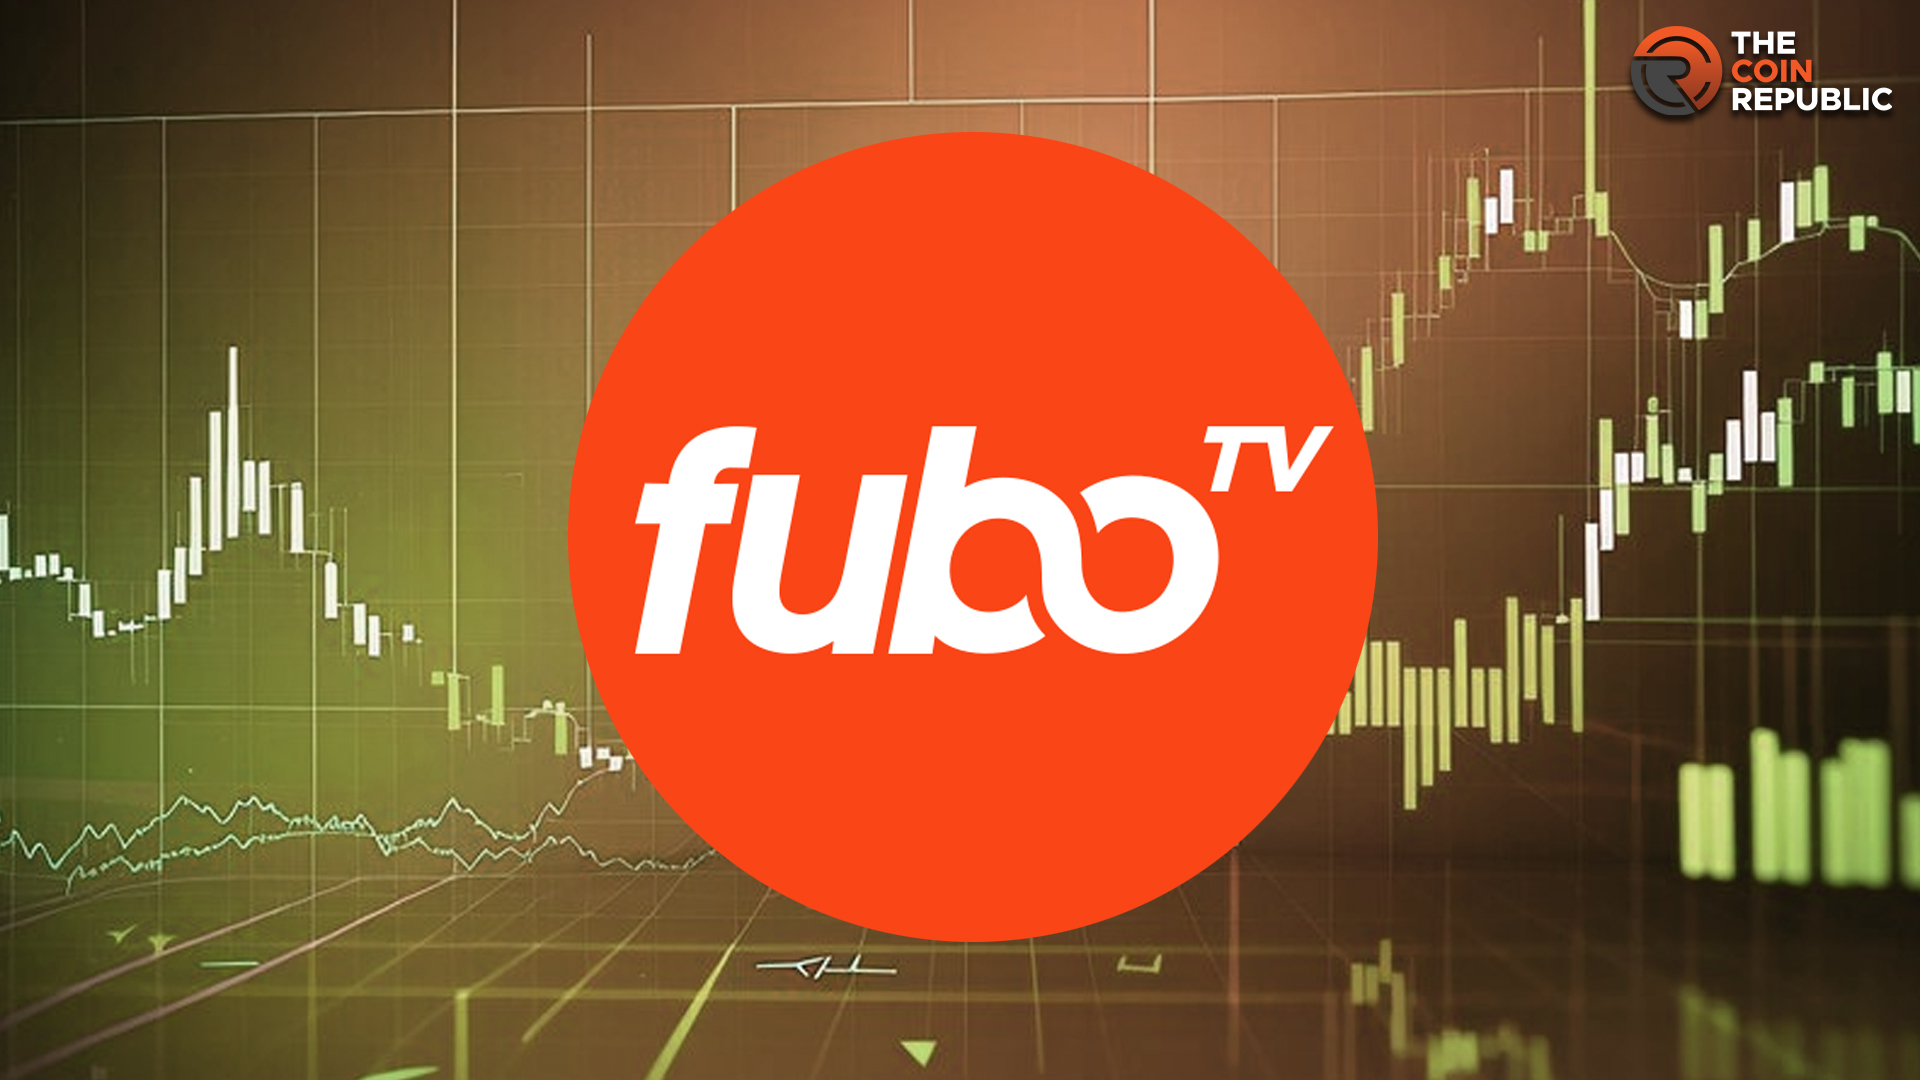 Fubotv Stock Price Surges 13; Is FUBO Stock Turning Bullish?